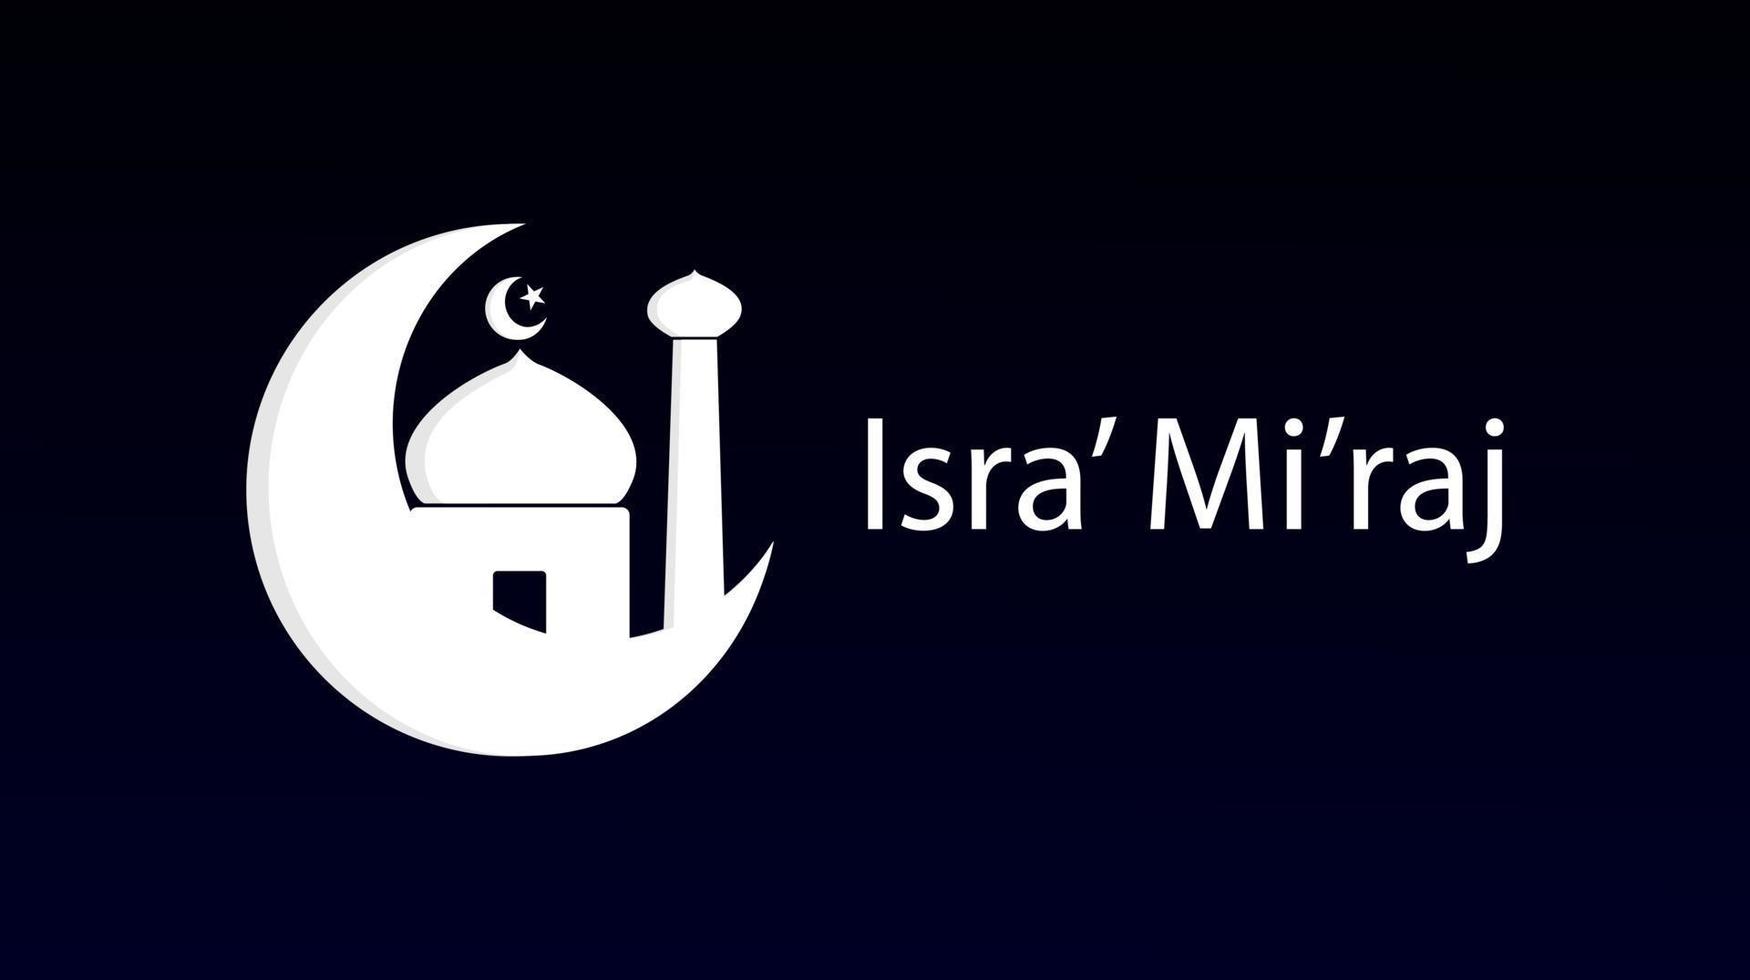 isra' mi'raj prophète muhammad saw. icône islamique. illustration vectorielle. vecteur